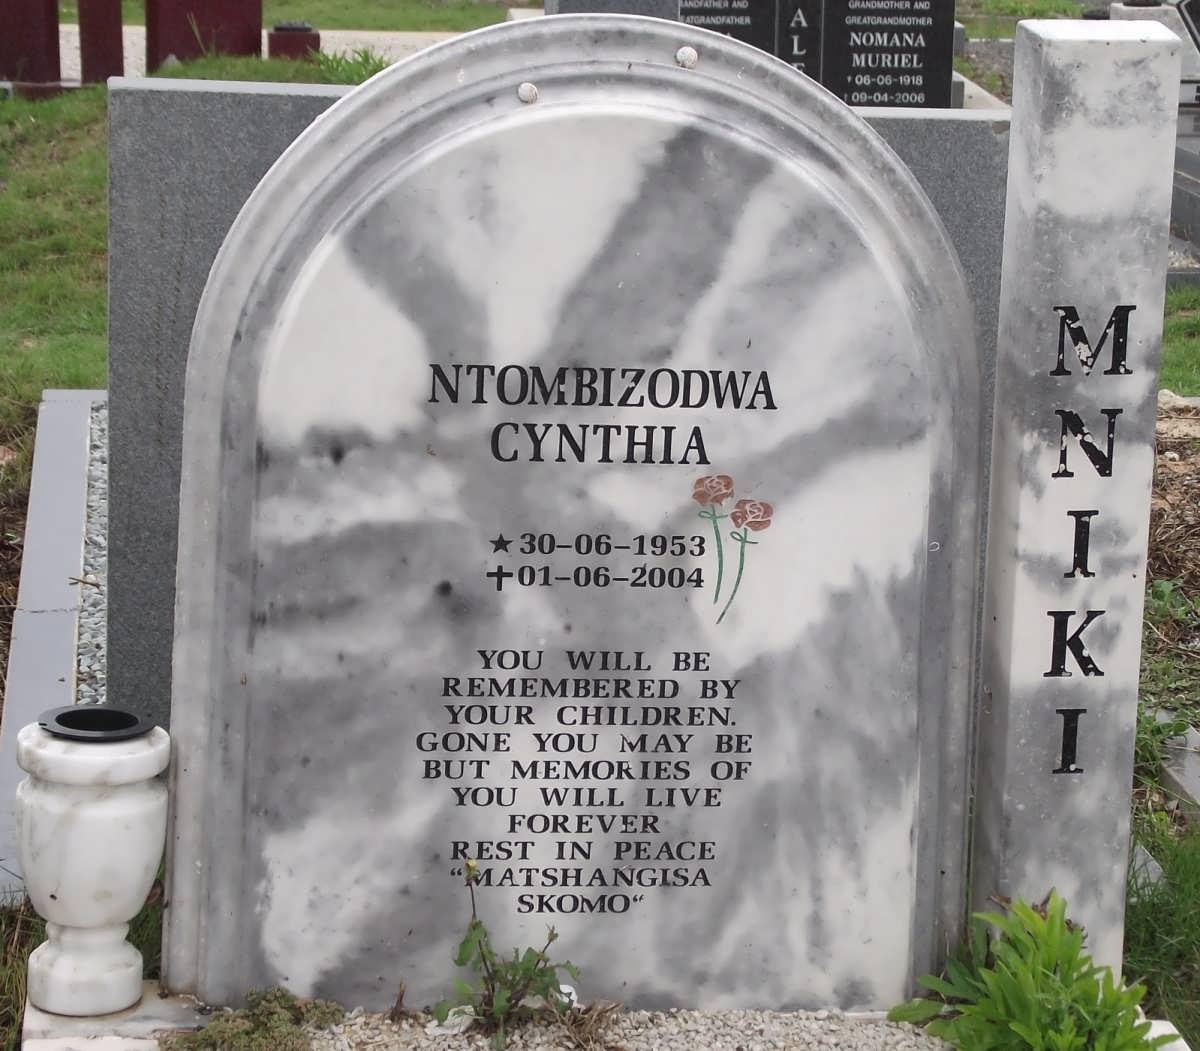 MNIKI Ntombizodwa Cynthia 1953-2004